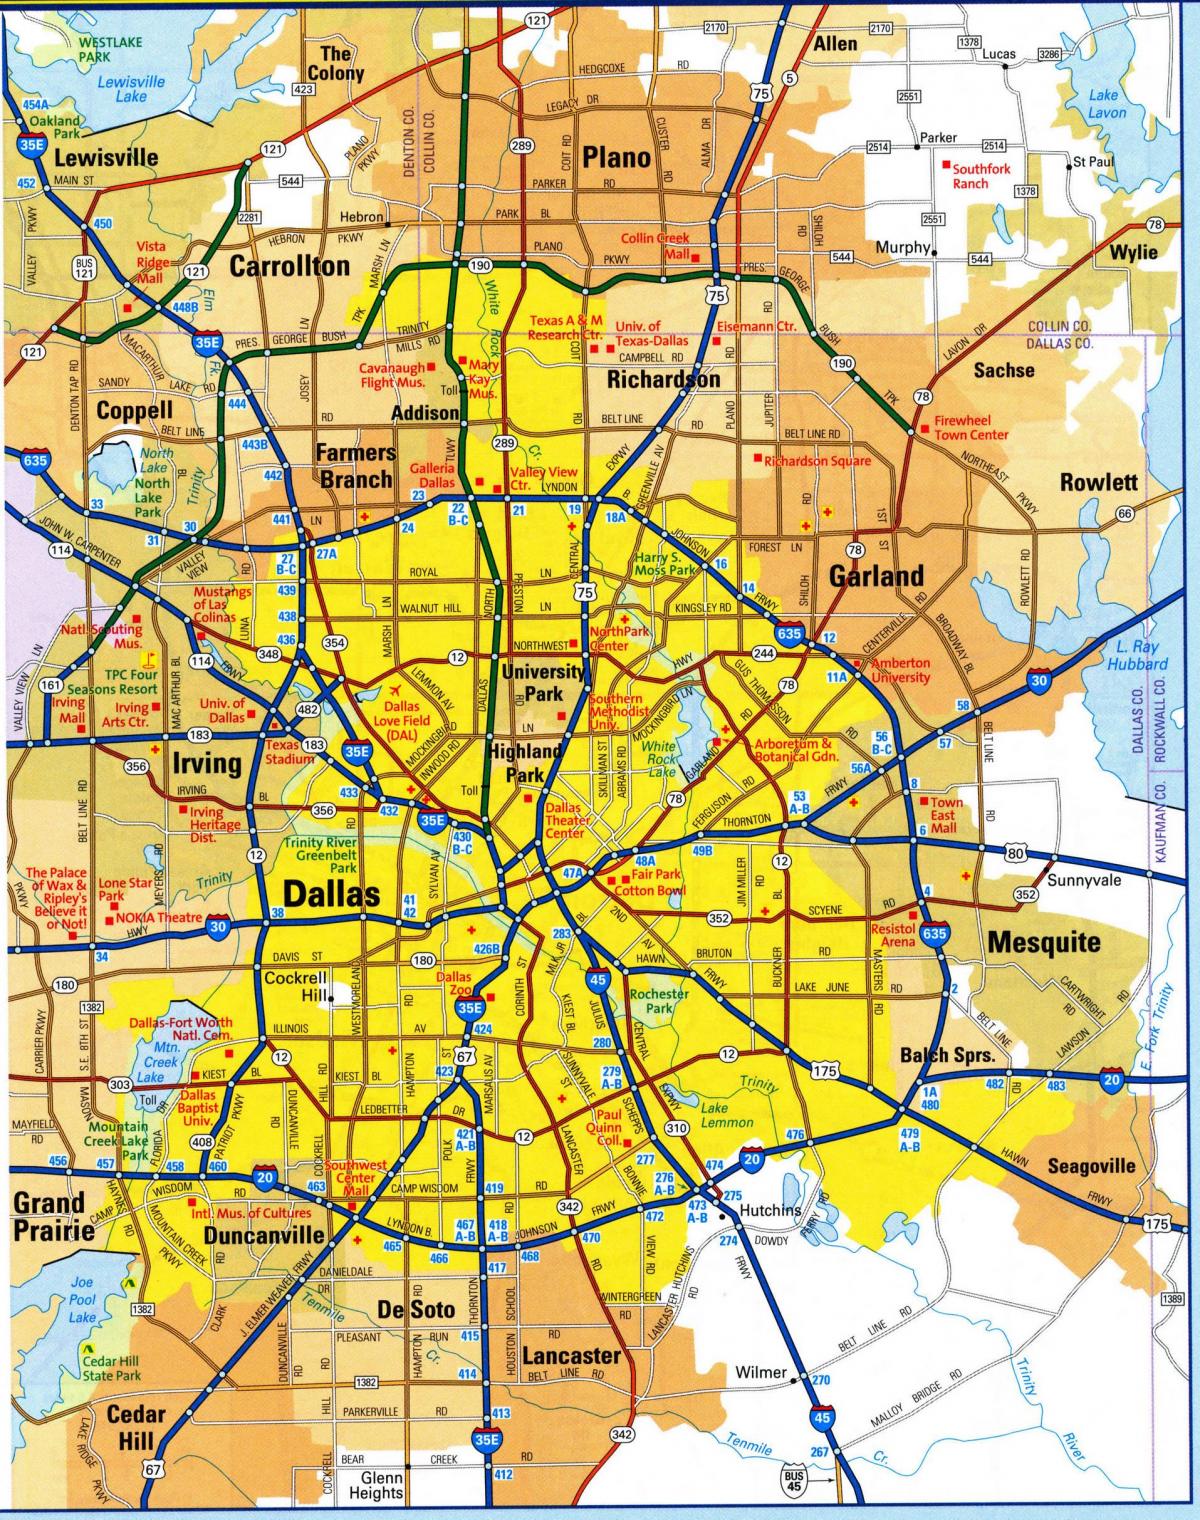 Mappa antica di Dallas